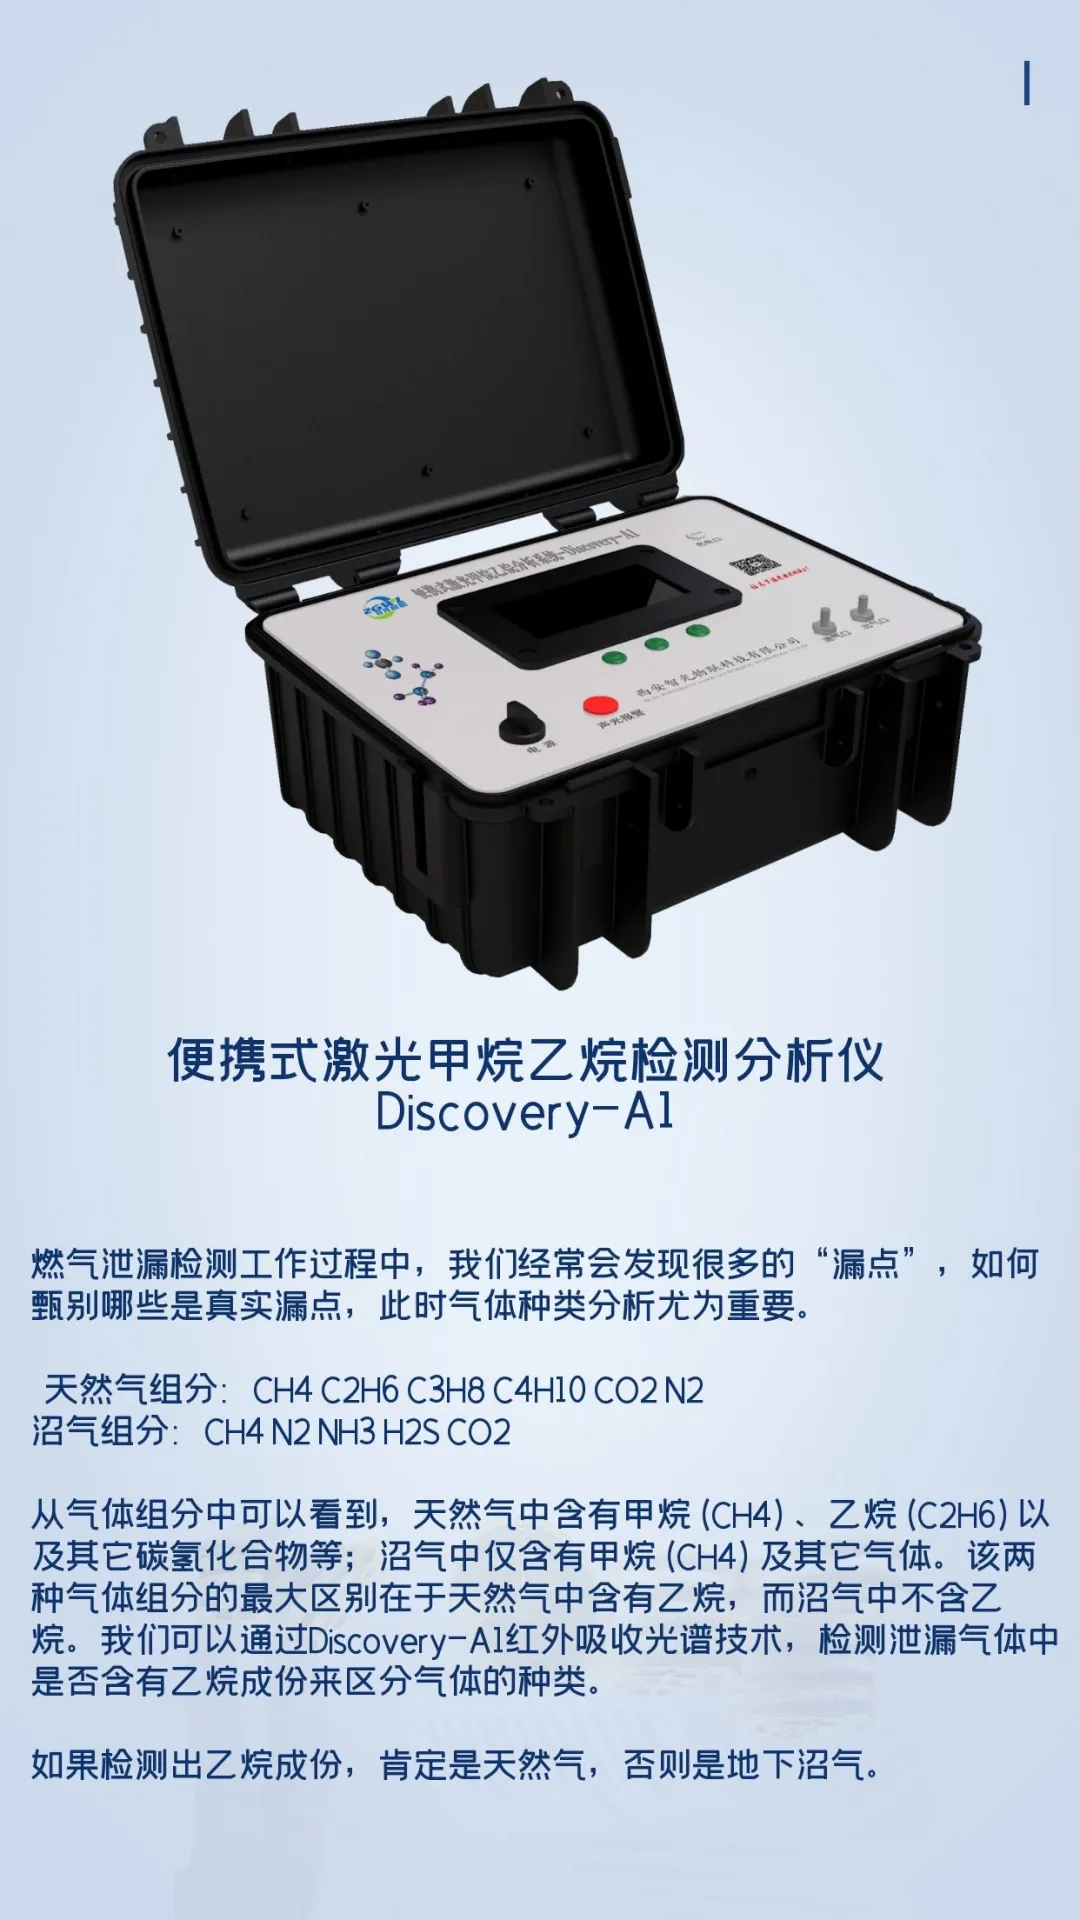 2021杭州燃气展，智光物联携激光天然气泄漏检测设备来啦